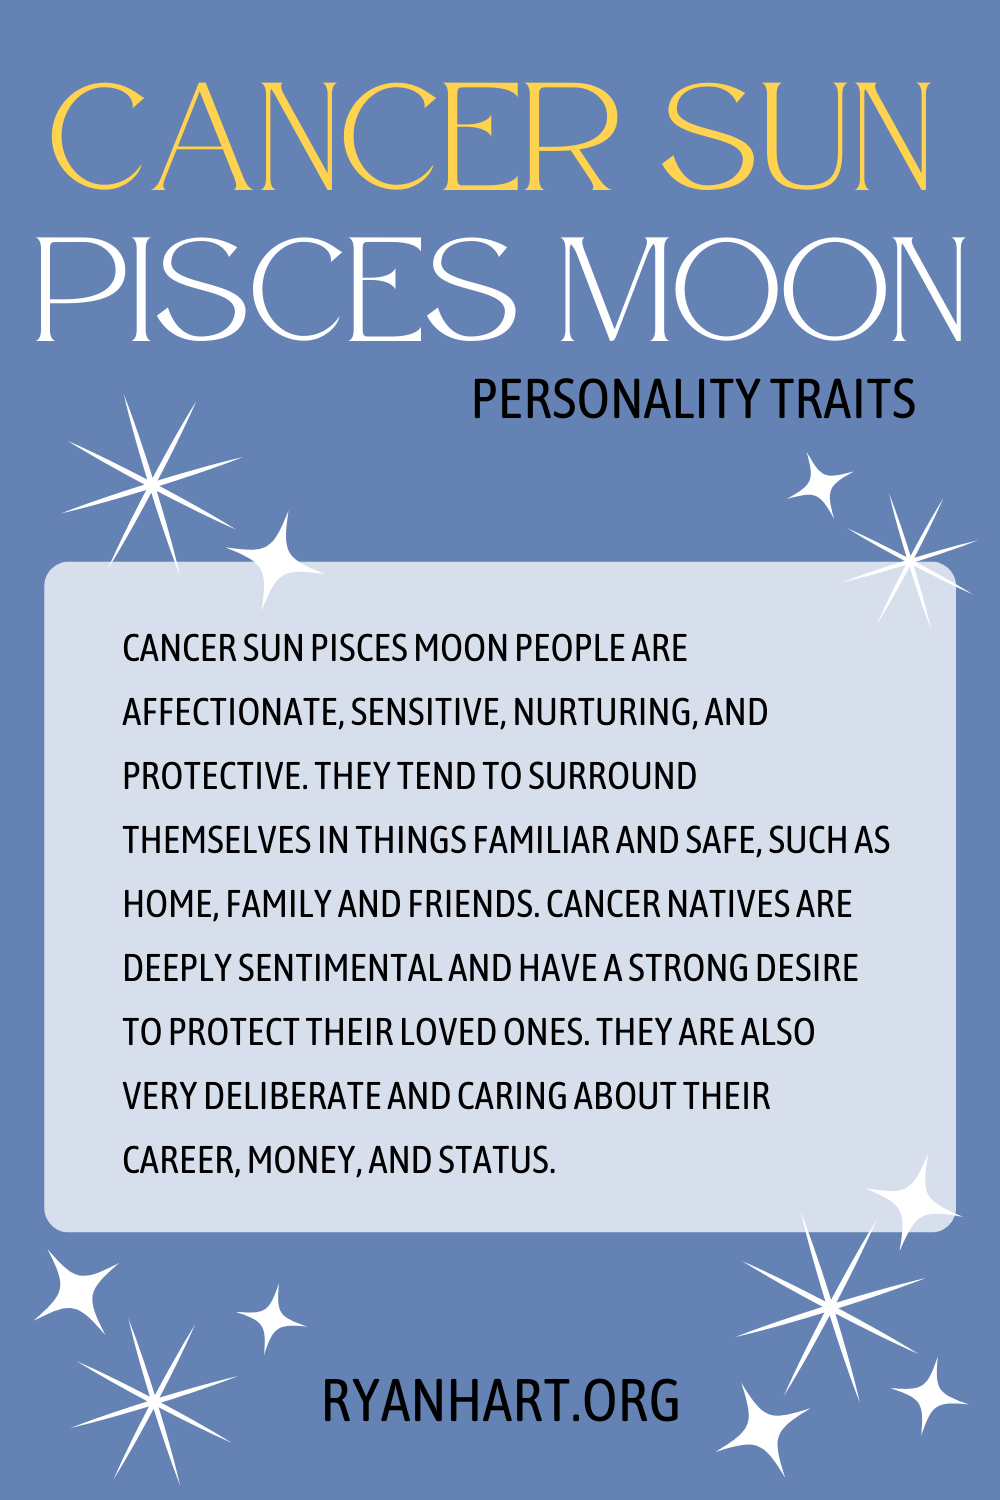 Cancer Sun Pisces Moon Description